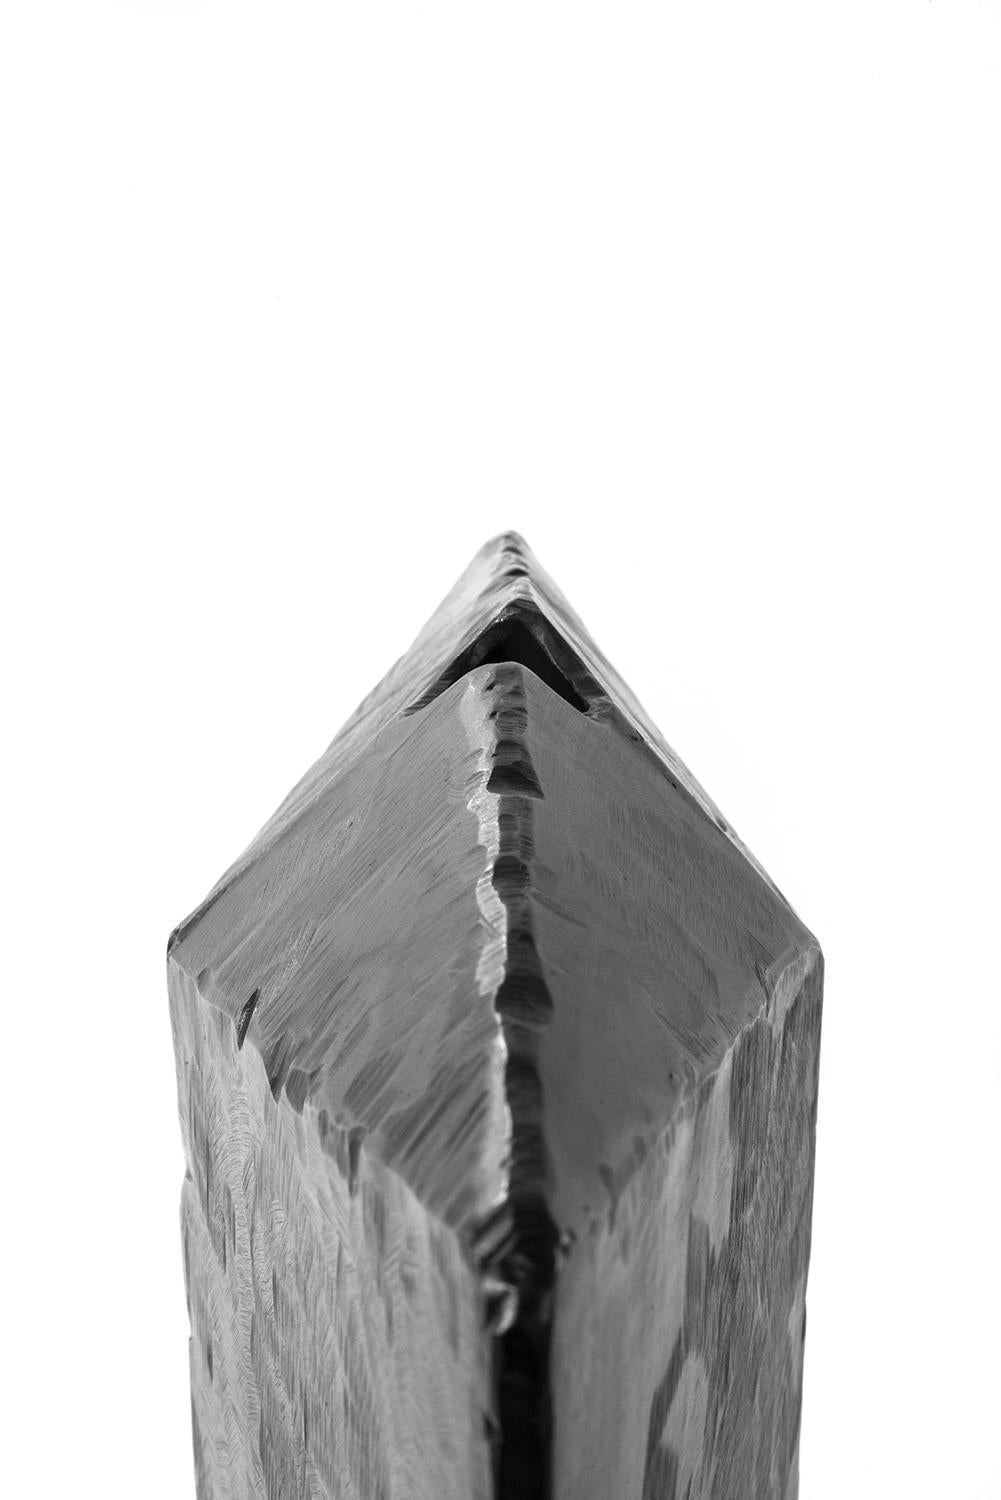 Schiff Nr. 4.
J.M. Szymanski
d. 2023
Geschwärztes und gewachstes Eisen

Es handelt sich um ein einzigartiges architektonisches Objekt, das vollständig aus Eisen besteht. J.M. Szymanski verwendet ein einzigartiges Verfahren der Metallbildhauerei, um